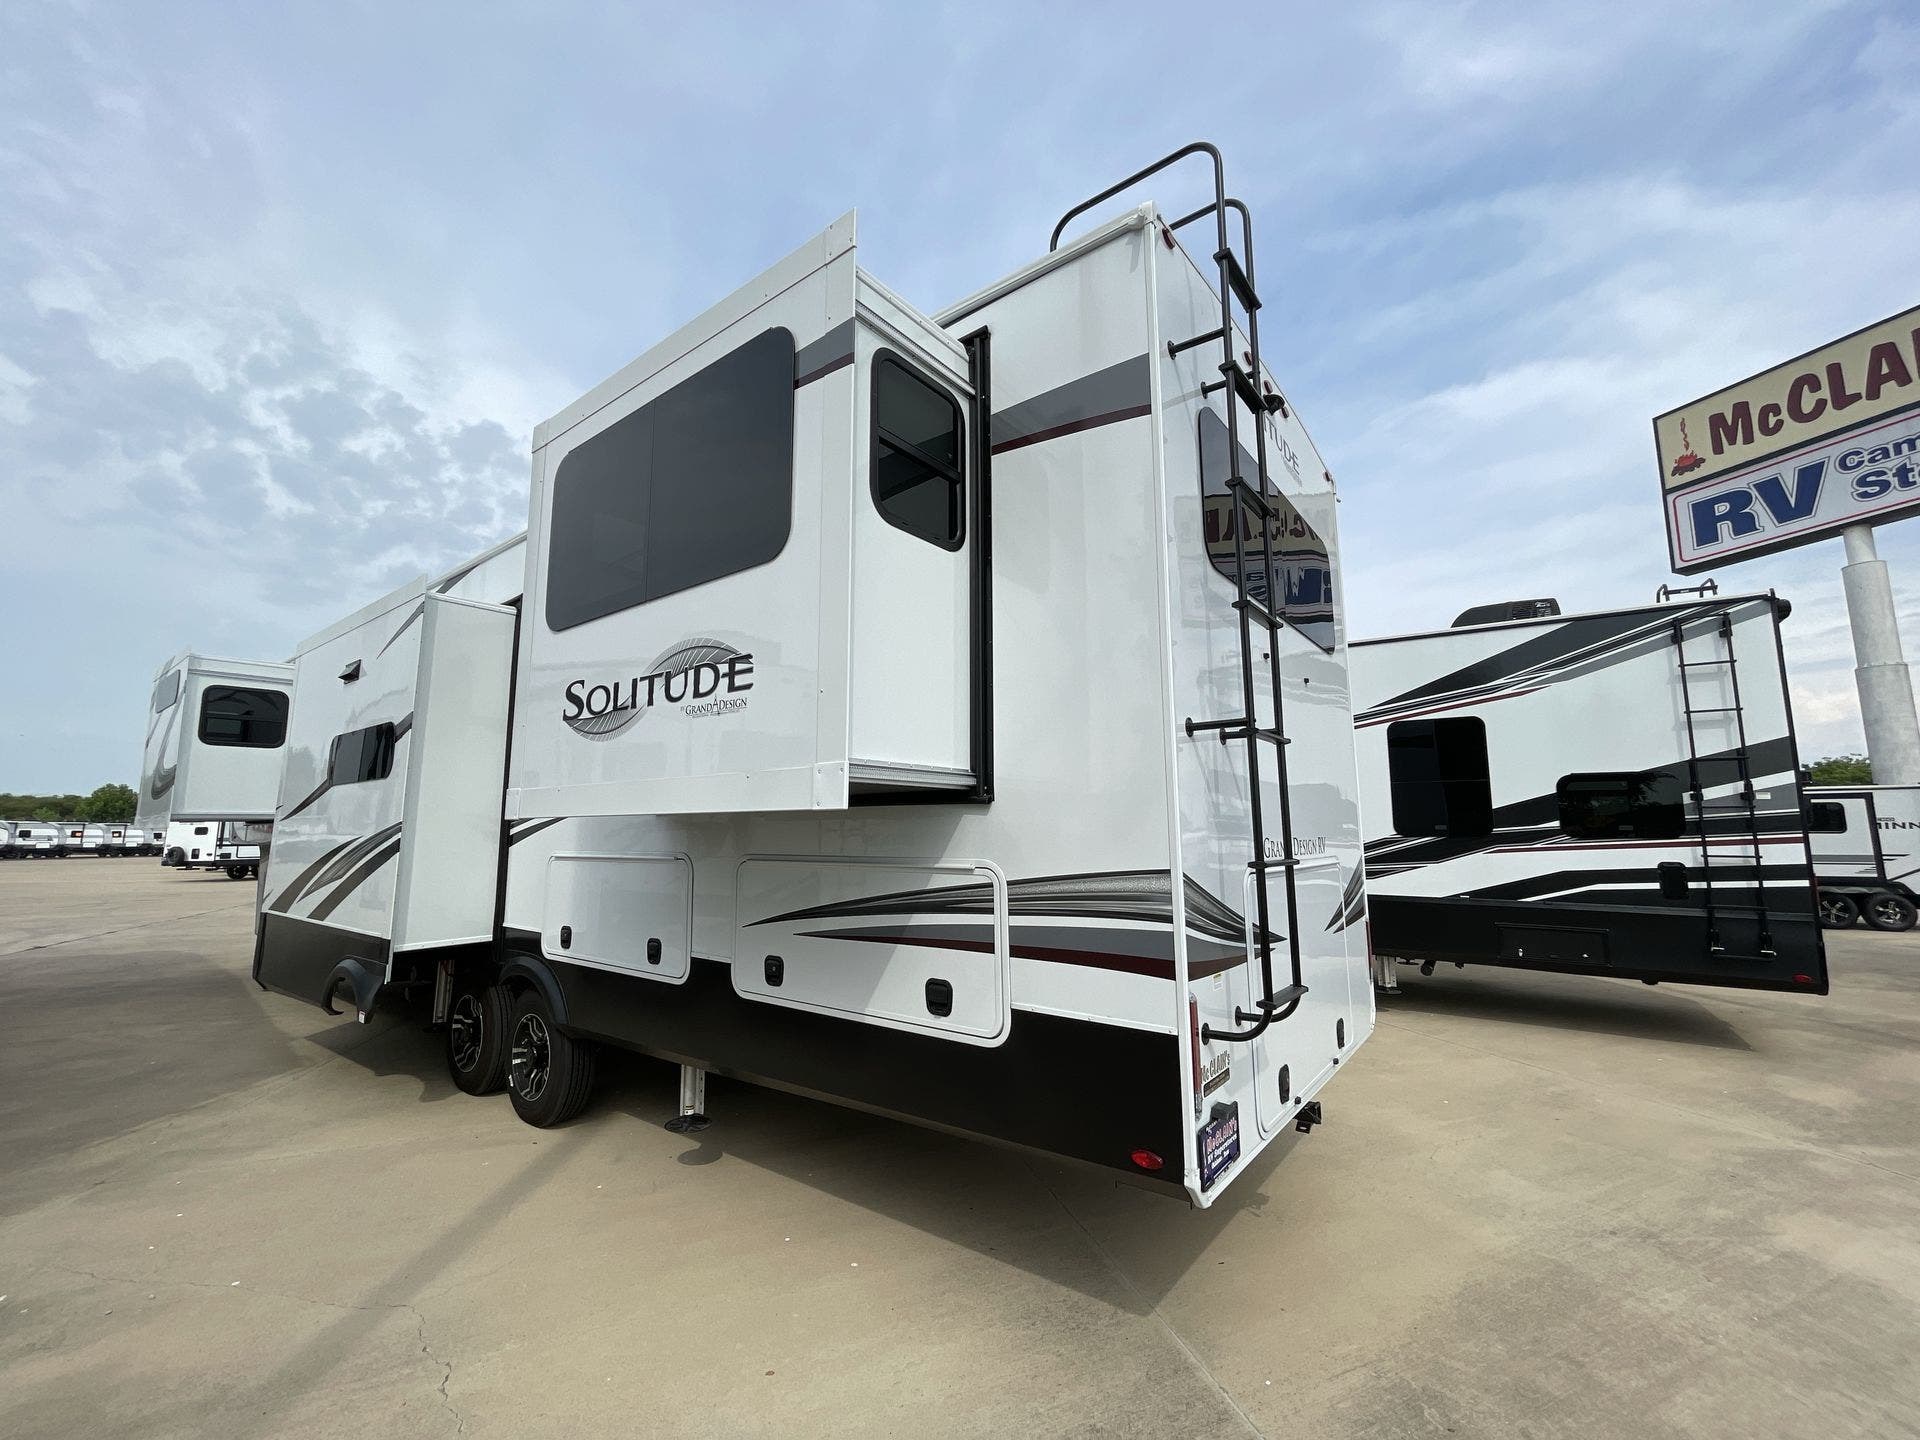 2022 Grand Design Solitude 375RESR RV for Sale in Fort Worth, TX 76140